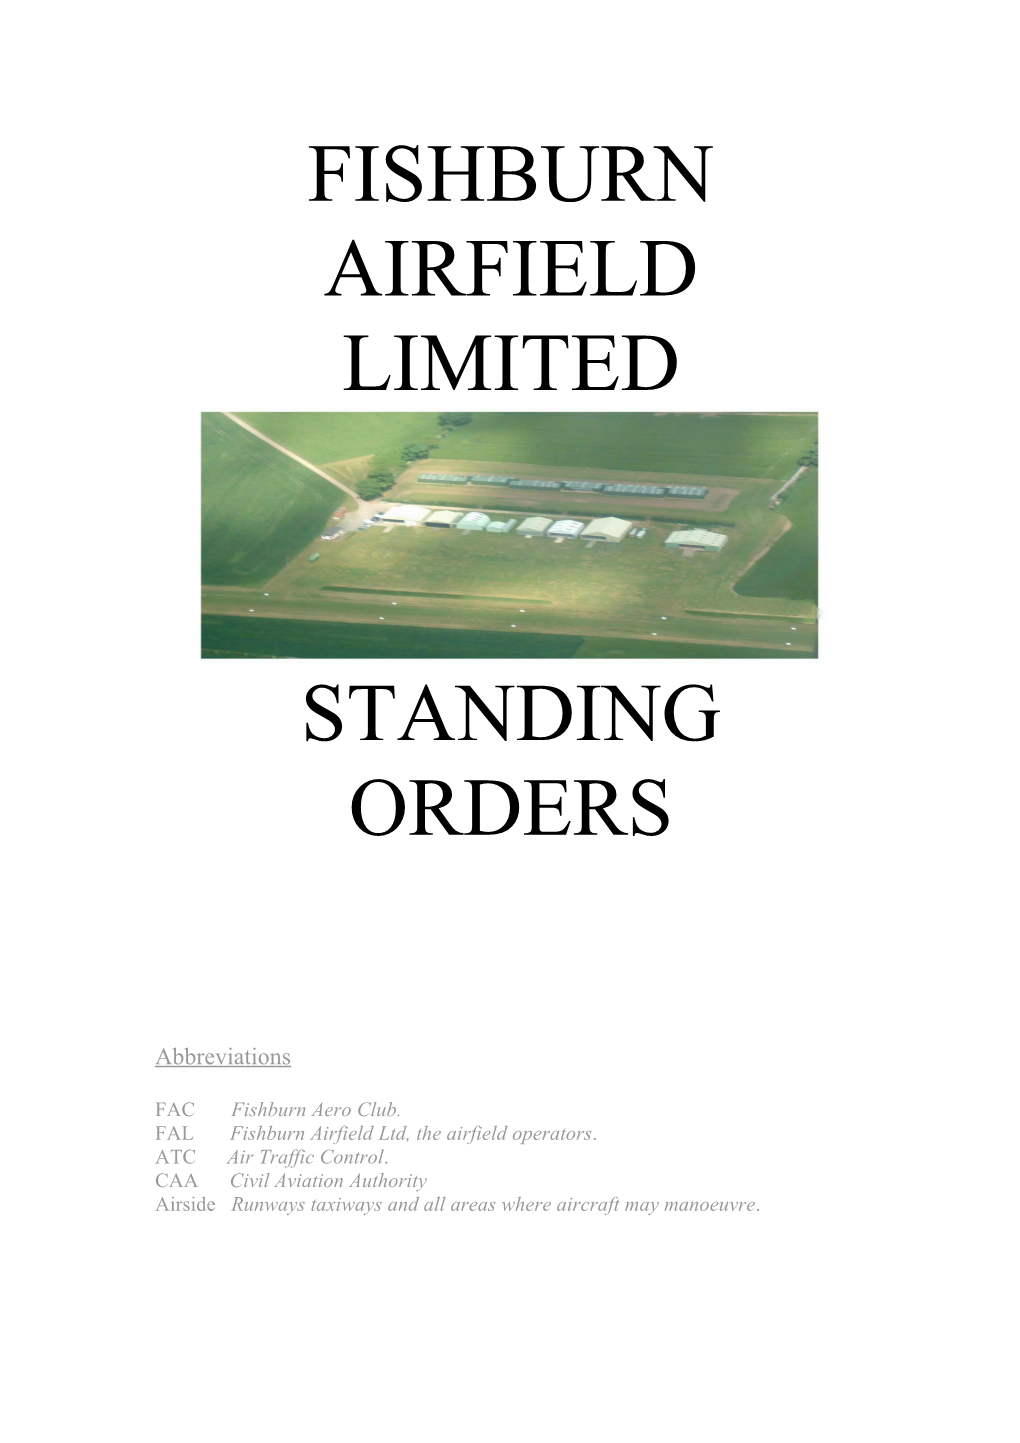 FAL Fishburn Airfield Ltd, the Airfield Operators